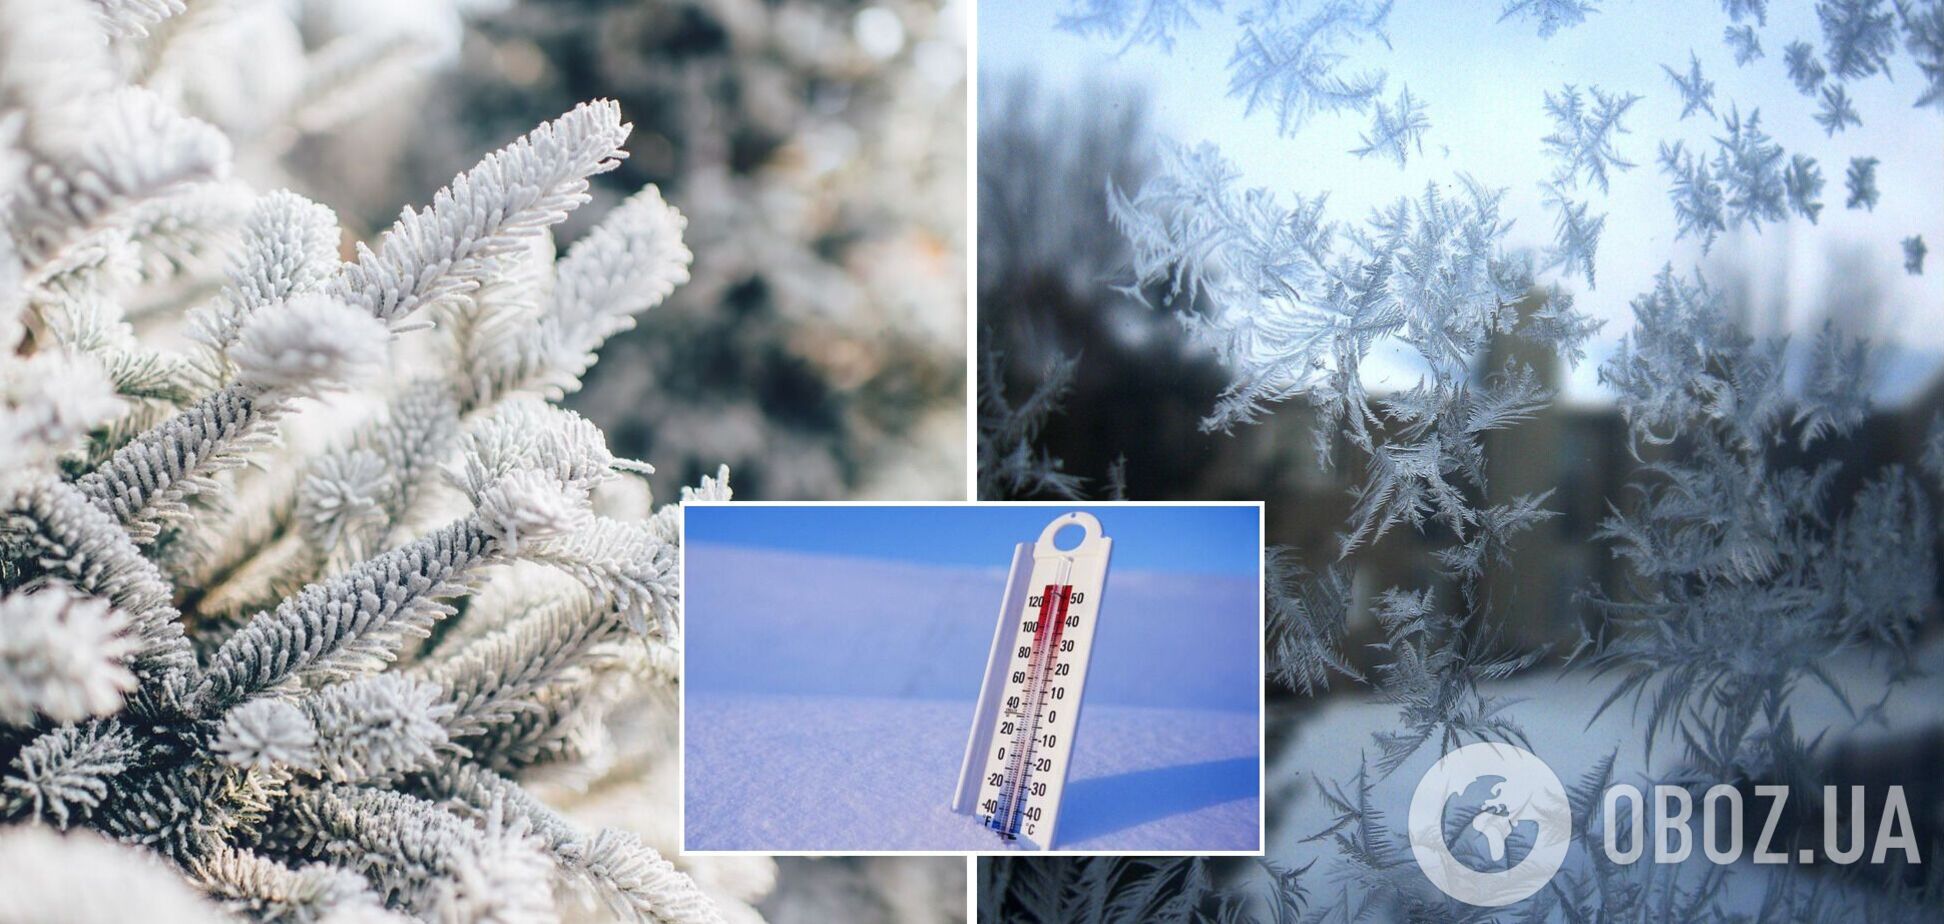 В Украине ударят морозы до 18 градусов, пойдет снег: синоптик рассказала, ждать ли потепления. Карта